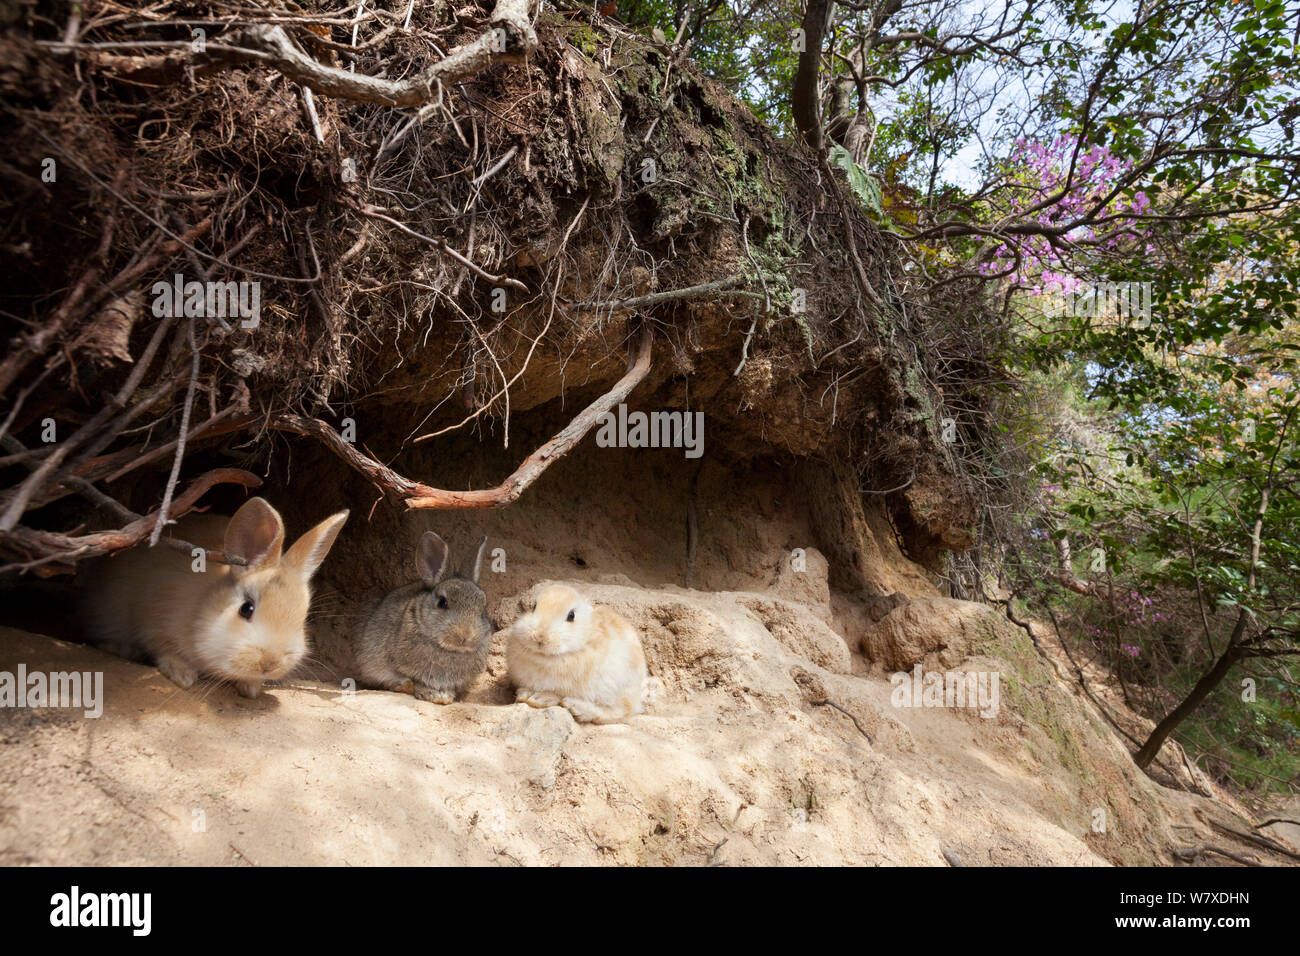 Les sauvages lapin (Oryctolagus cuniculus) les bébés à l'extérieur de l'île de terrier Okunojima, également connu sous le nom de Rabbit Island, Hiroshima, Japon. Banque D'Images